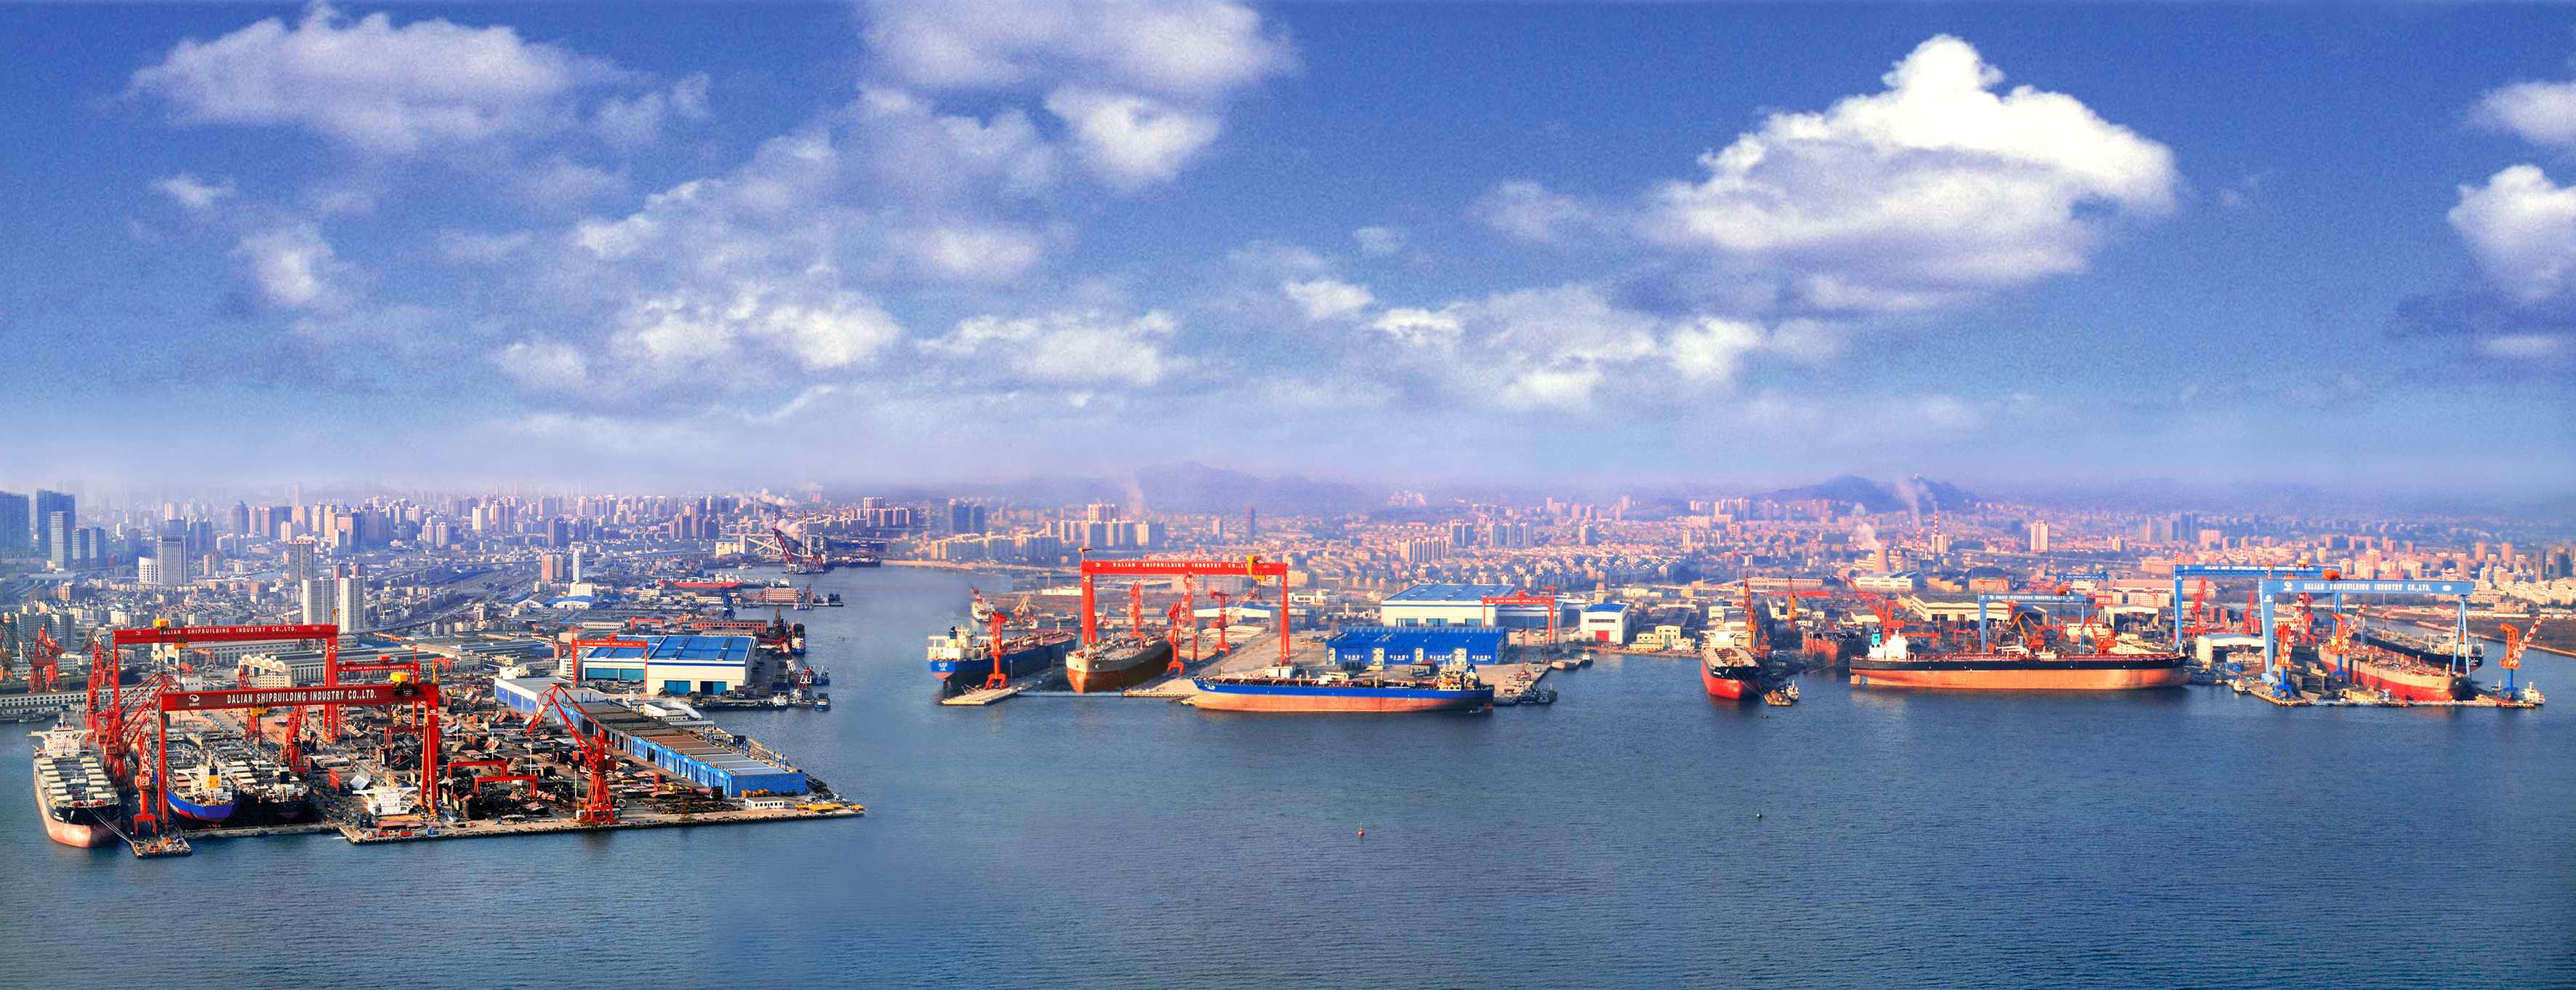 Dalian Shipyard (CSSC) - SHIPYARD